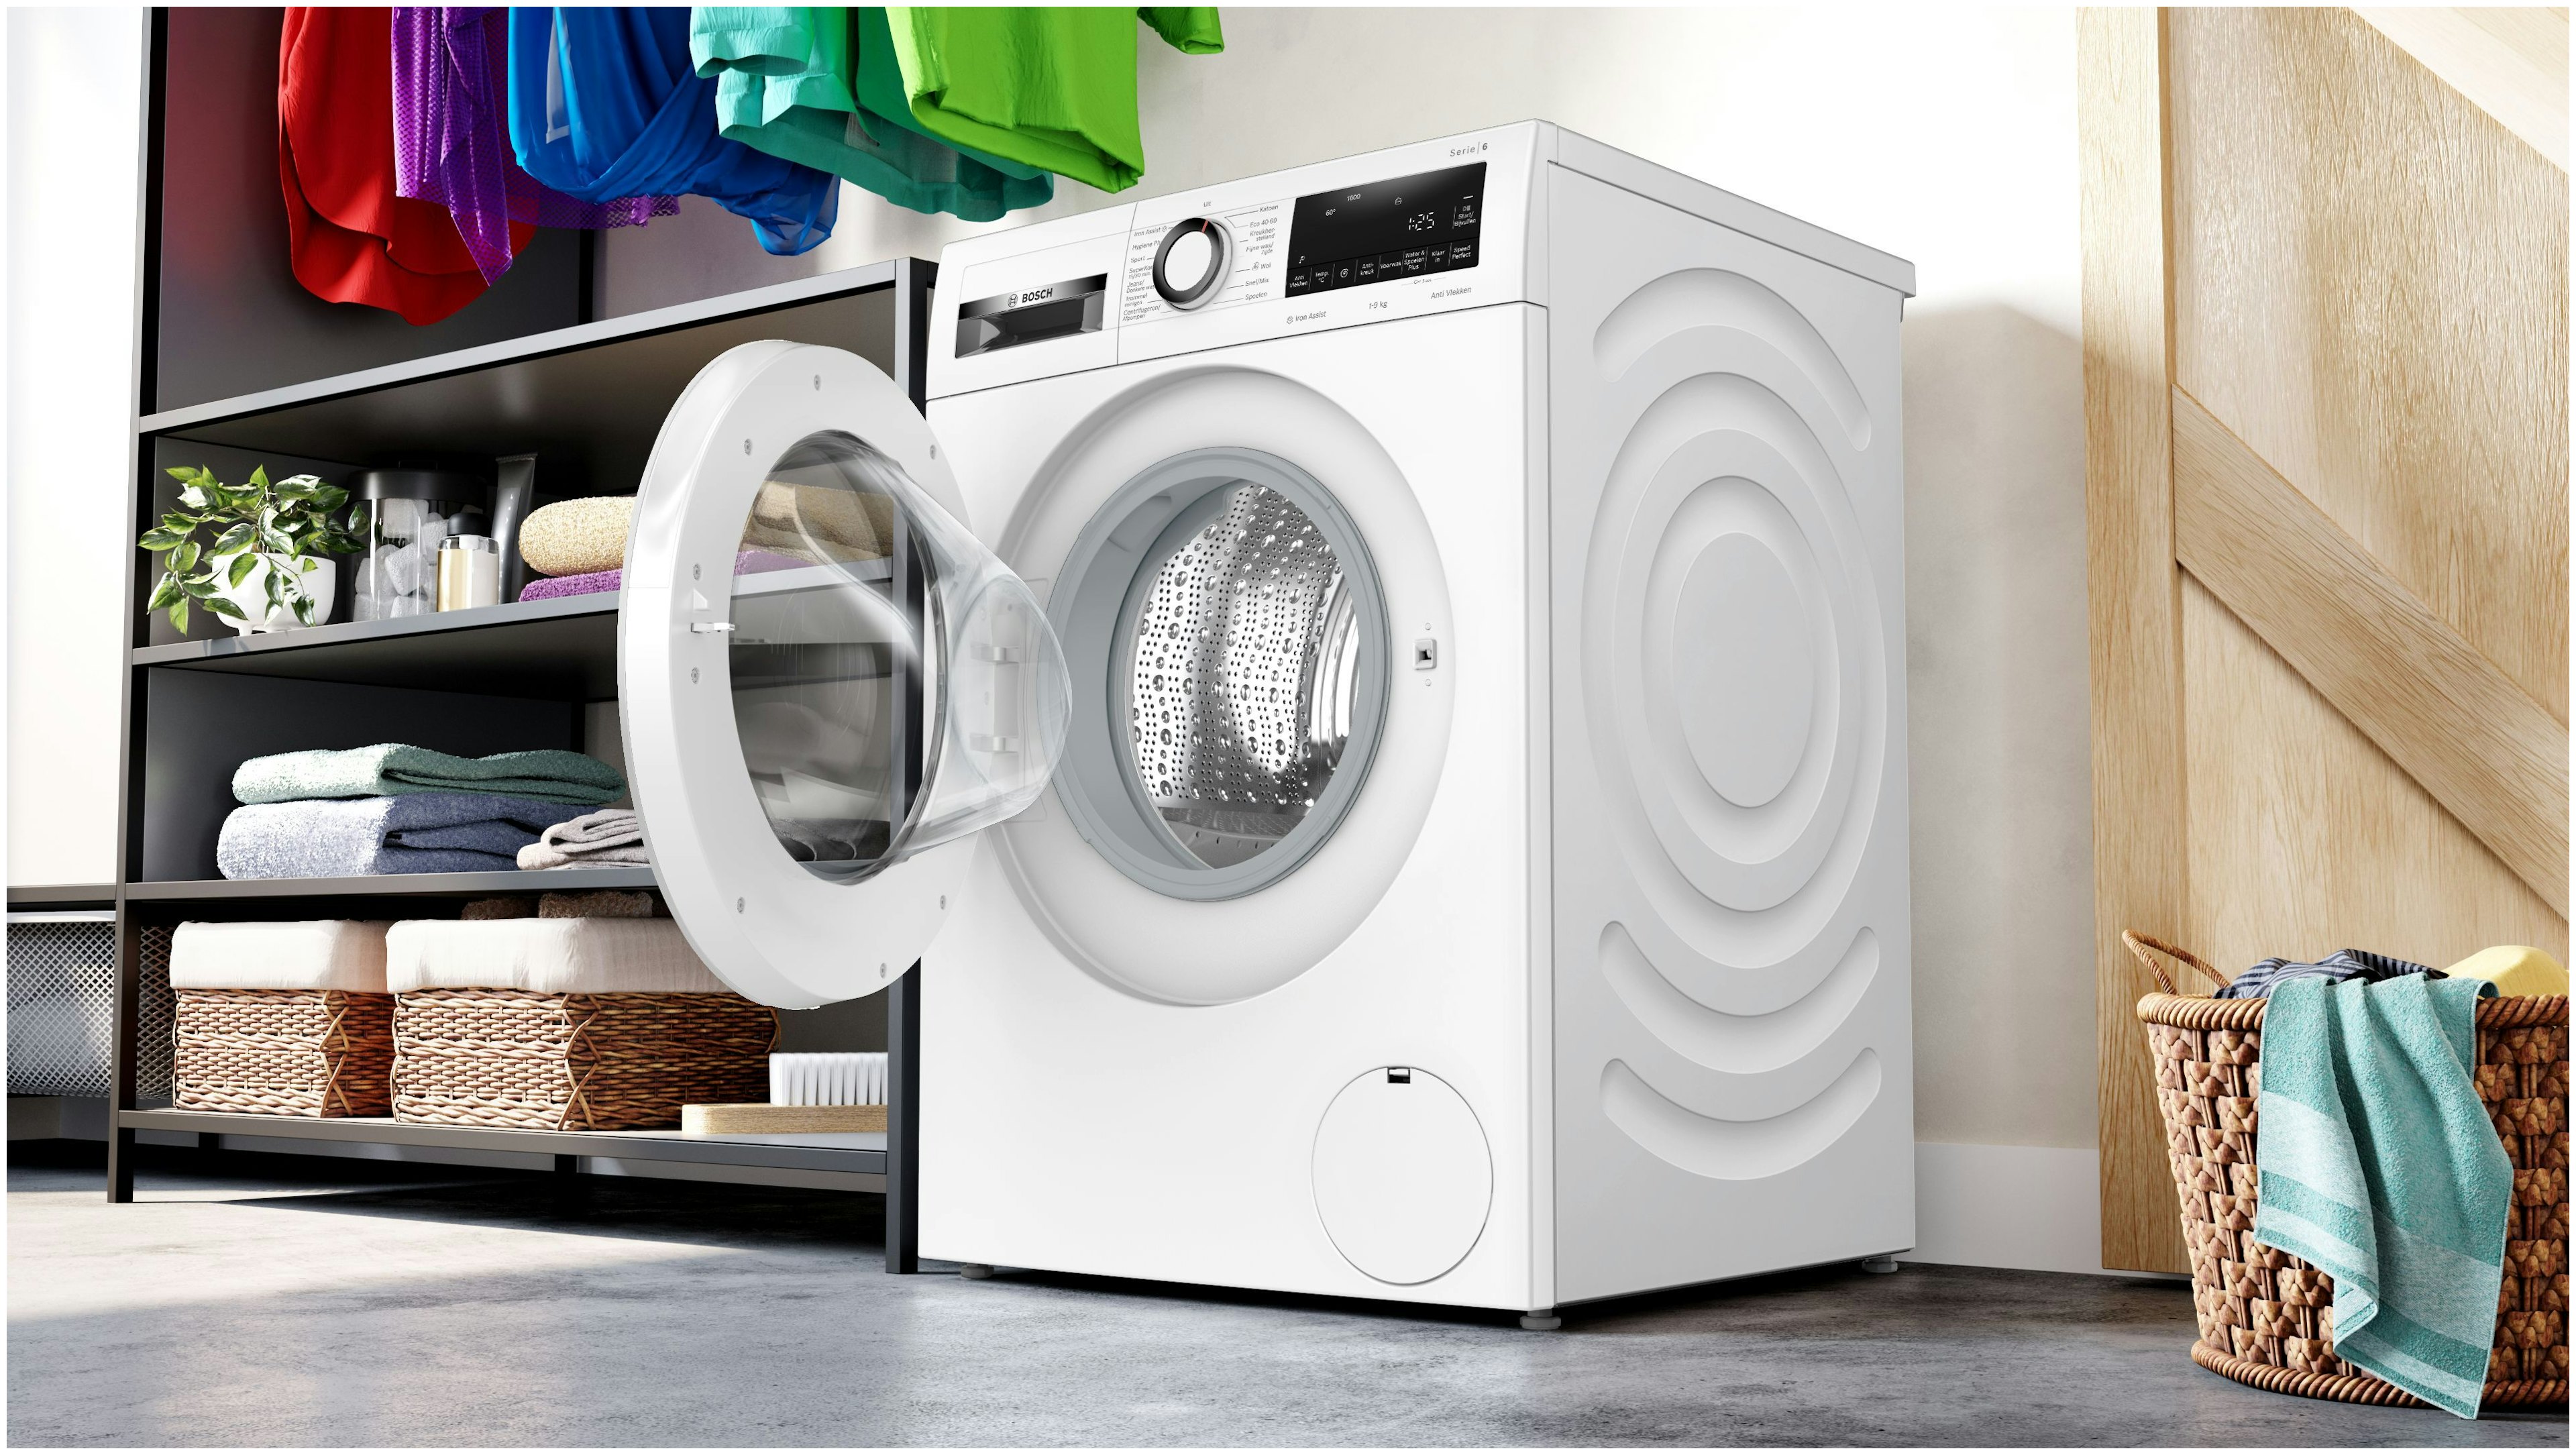 Bosch wasmachine  WGG246Z0NL afbeelding 4